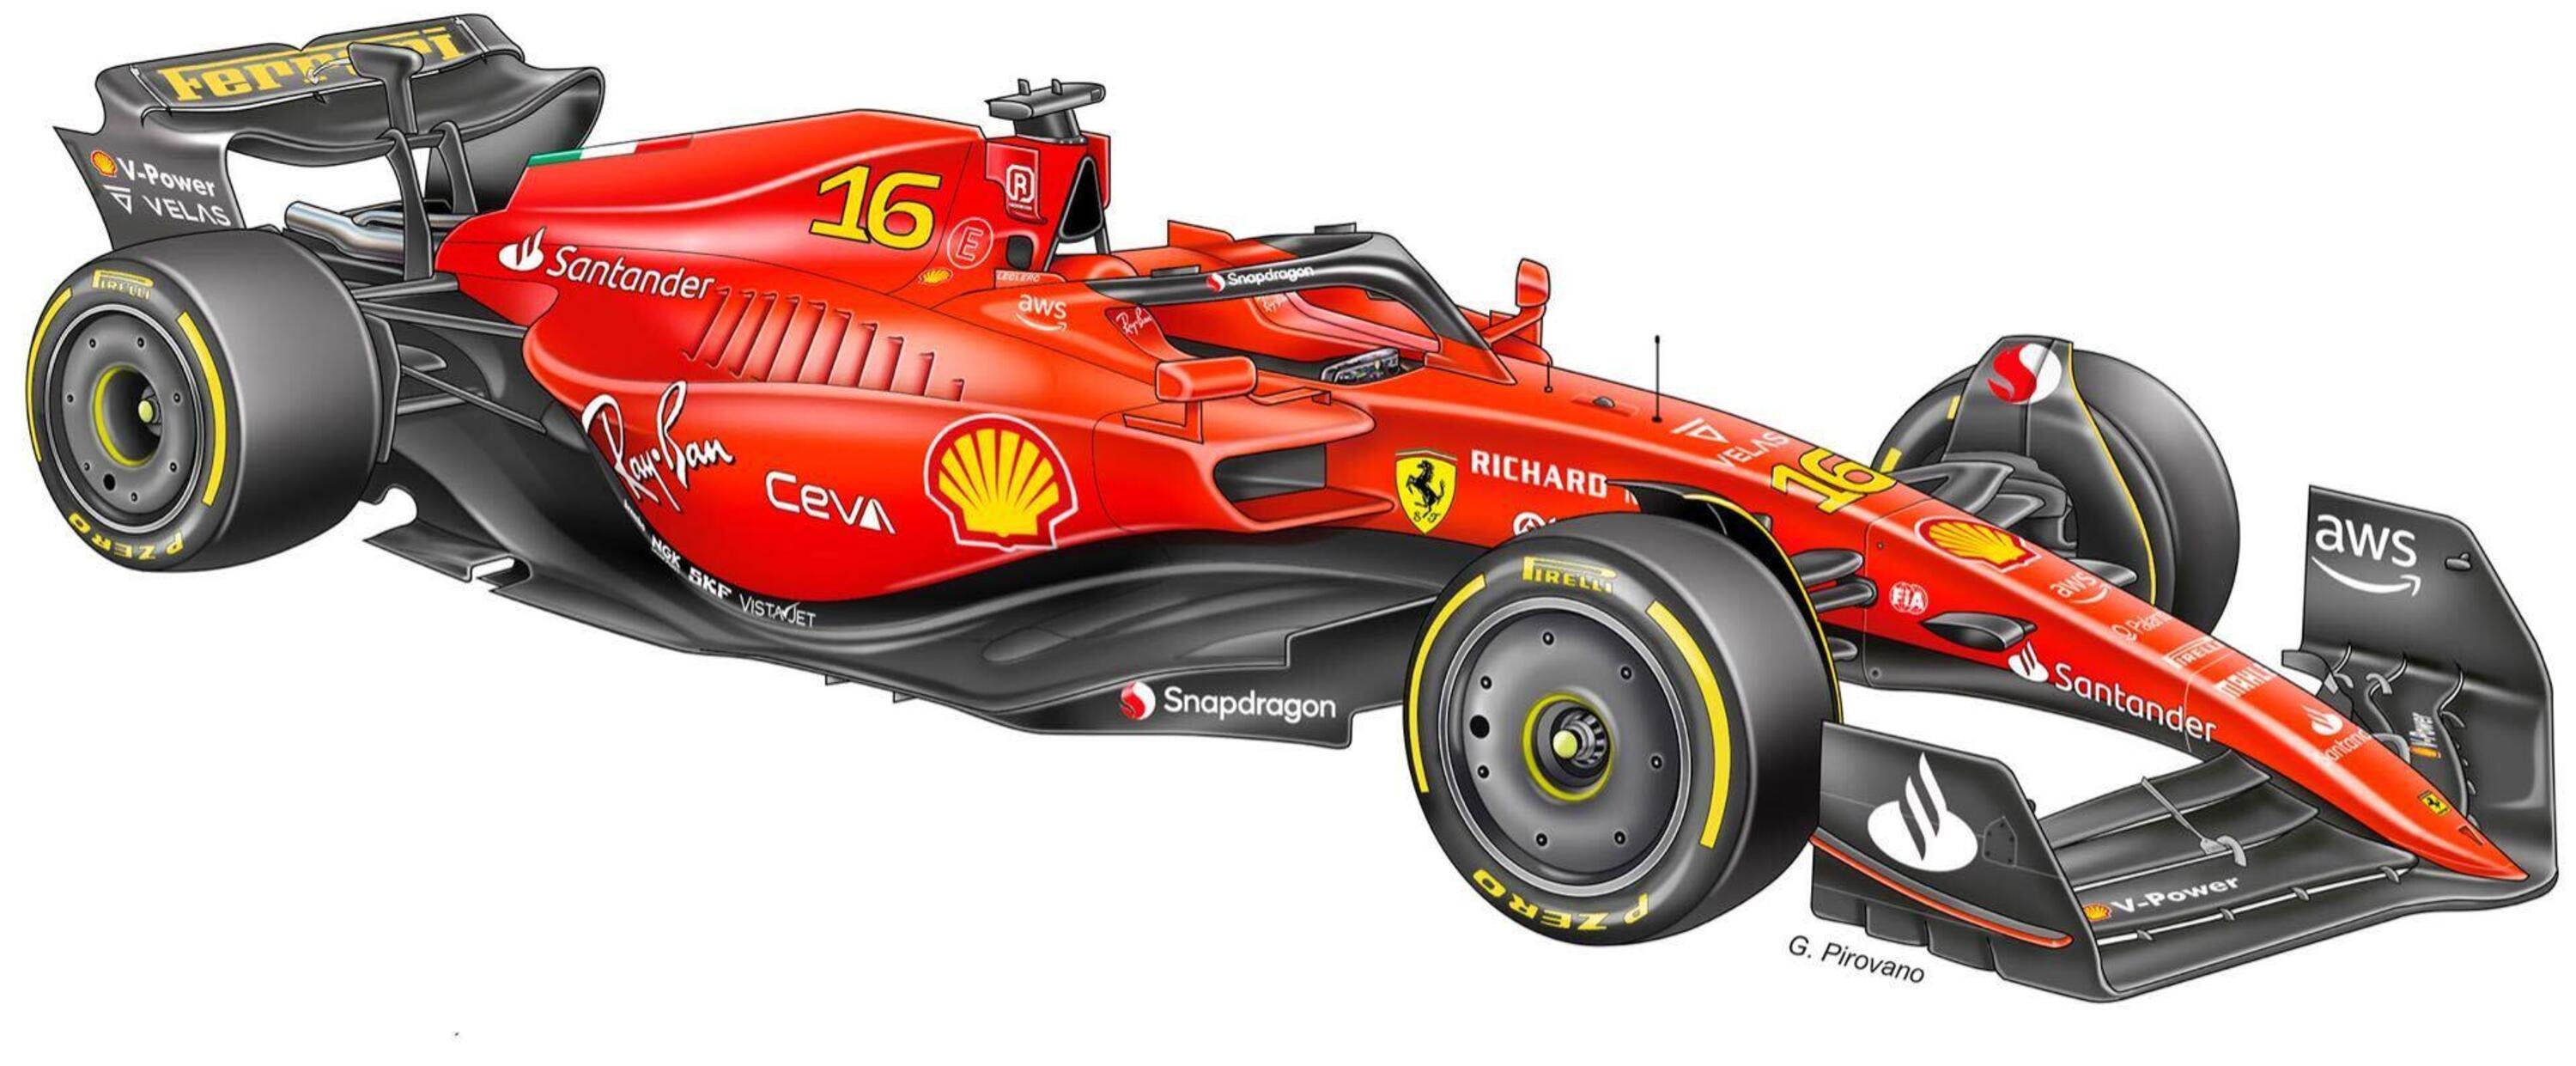 F1: ecco come potrebbe essere la monoposto della Ferrari per il 2023